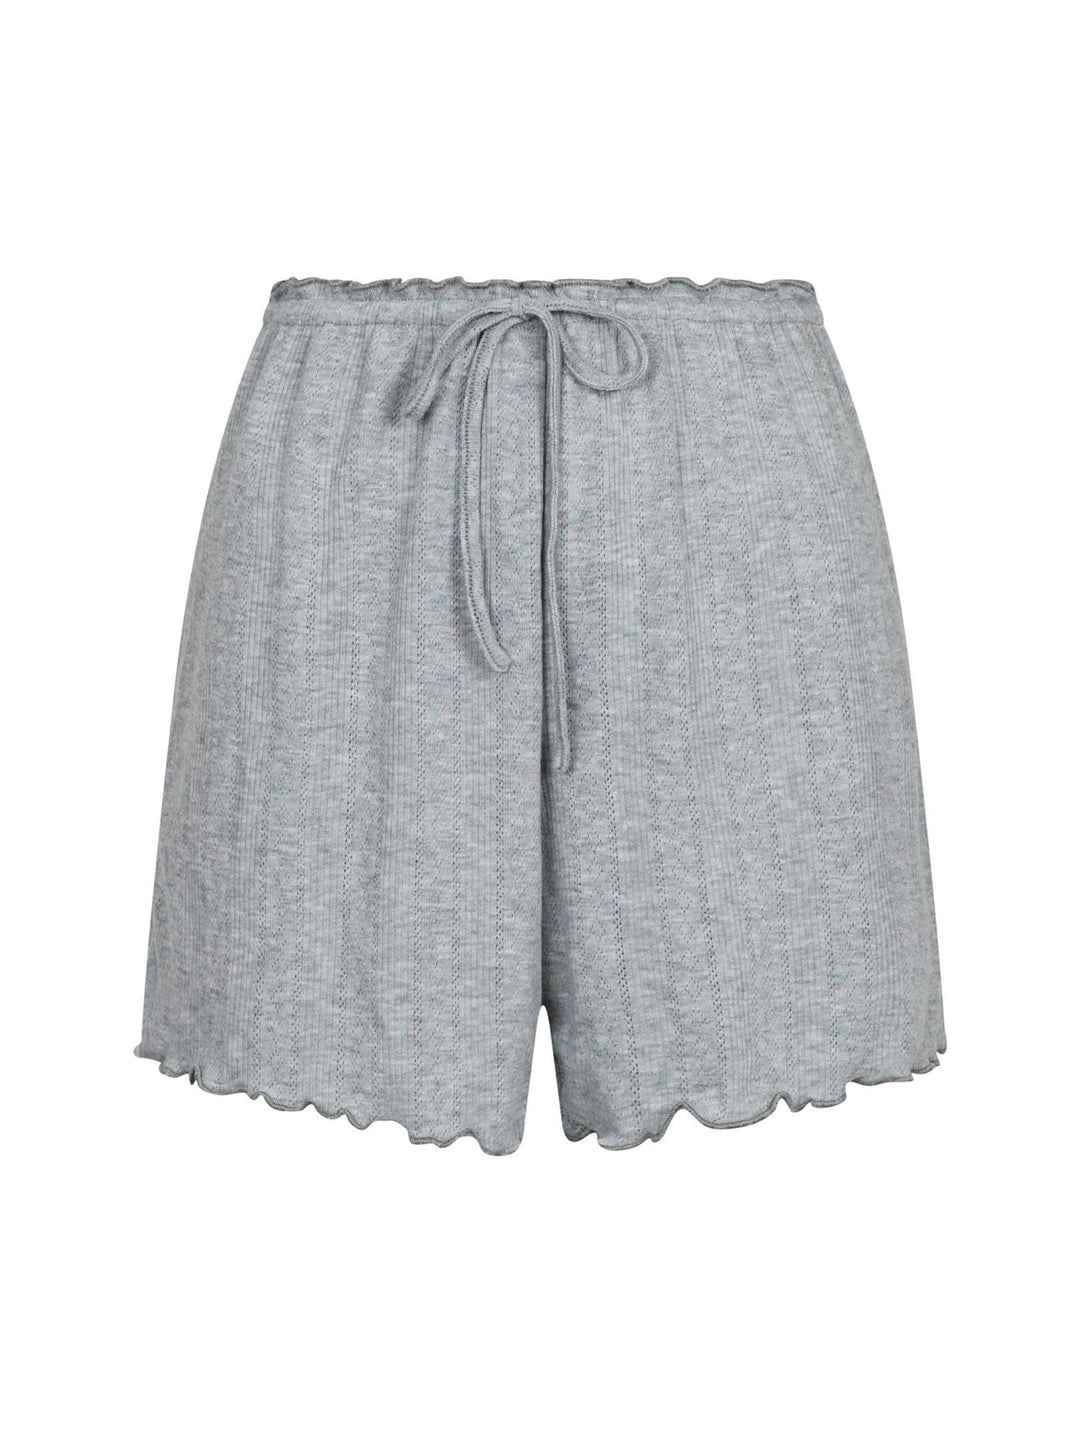 Merritt Pointelle Shorts  Light Grey